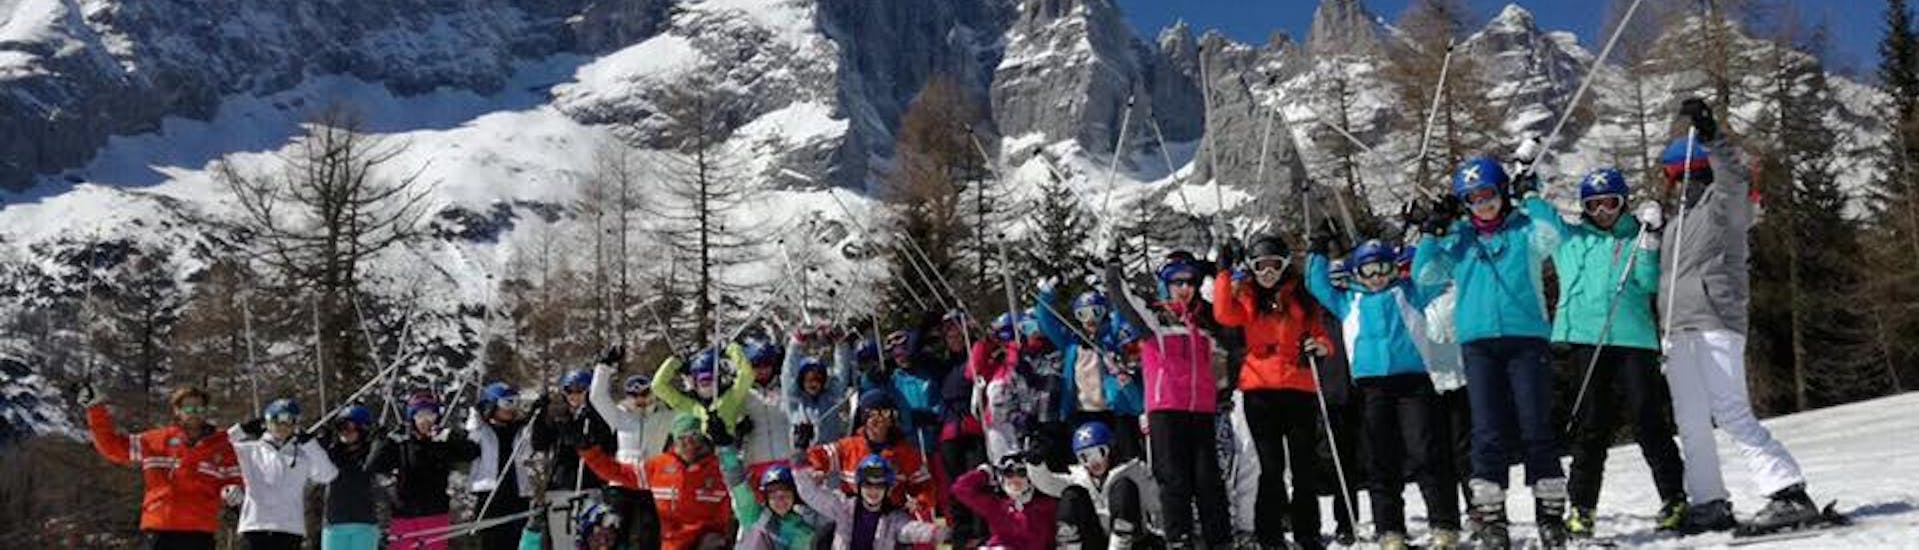 Der Kids Ski Lessons (from 9 y.) - Full Day - Advanced ist vorbei und die Teilnehmer des Abschlussrennens stehen auf dem Podium, der Lehrer der Skischule Scuola Italiana di Sci Civetta feiert mit ihnen.